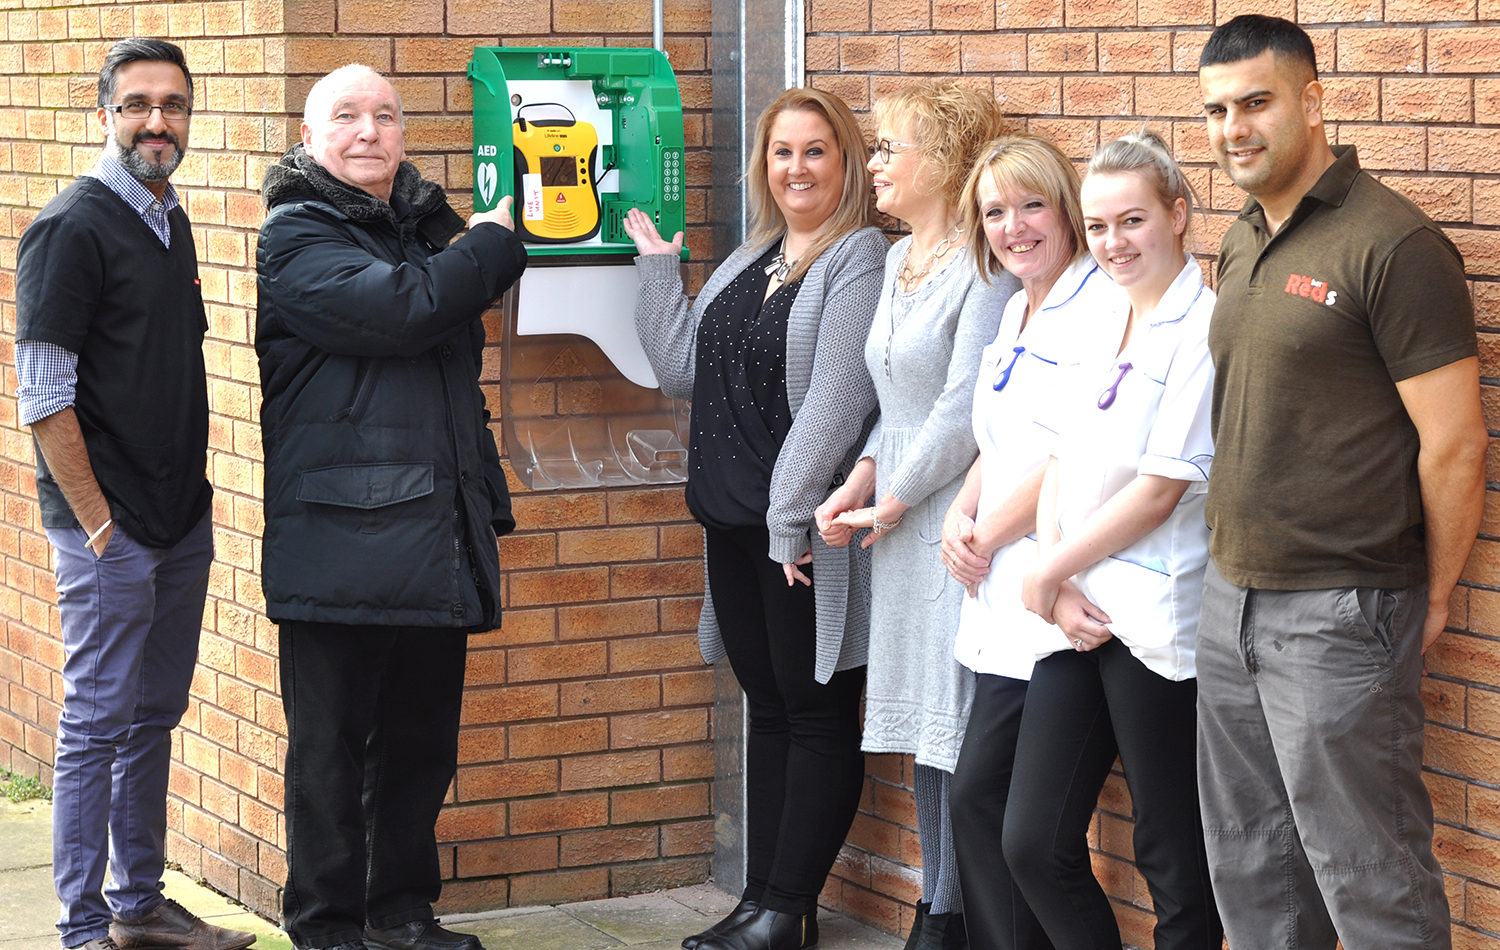 24hr Defibrillator Installed at Woodham Community Centre